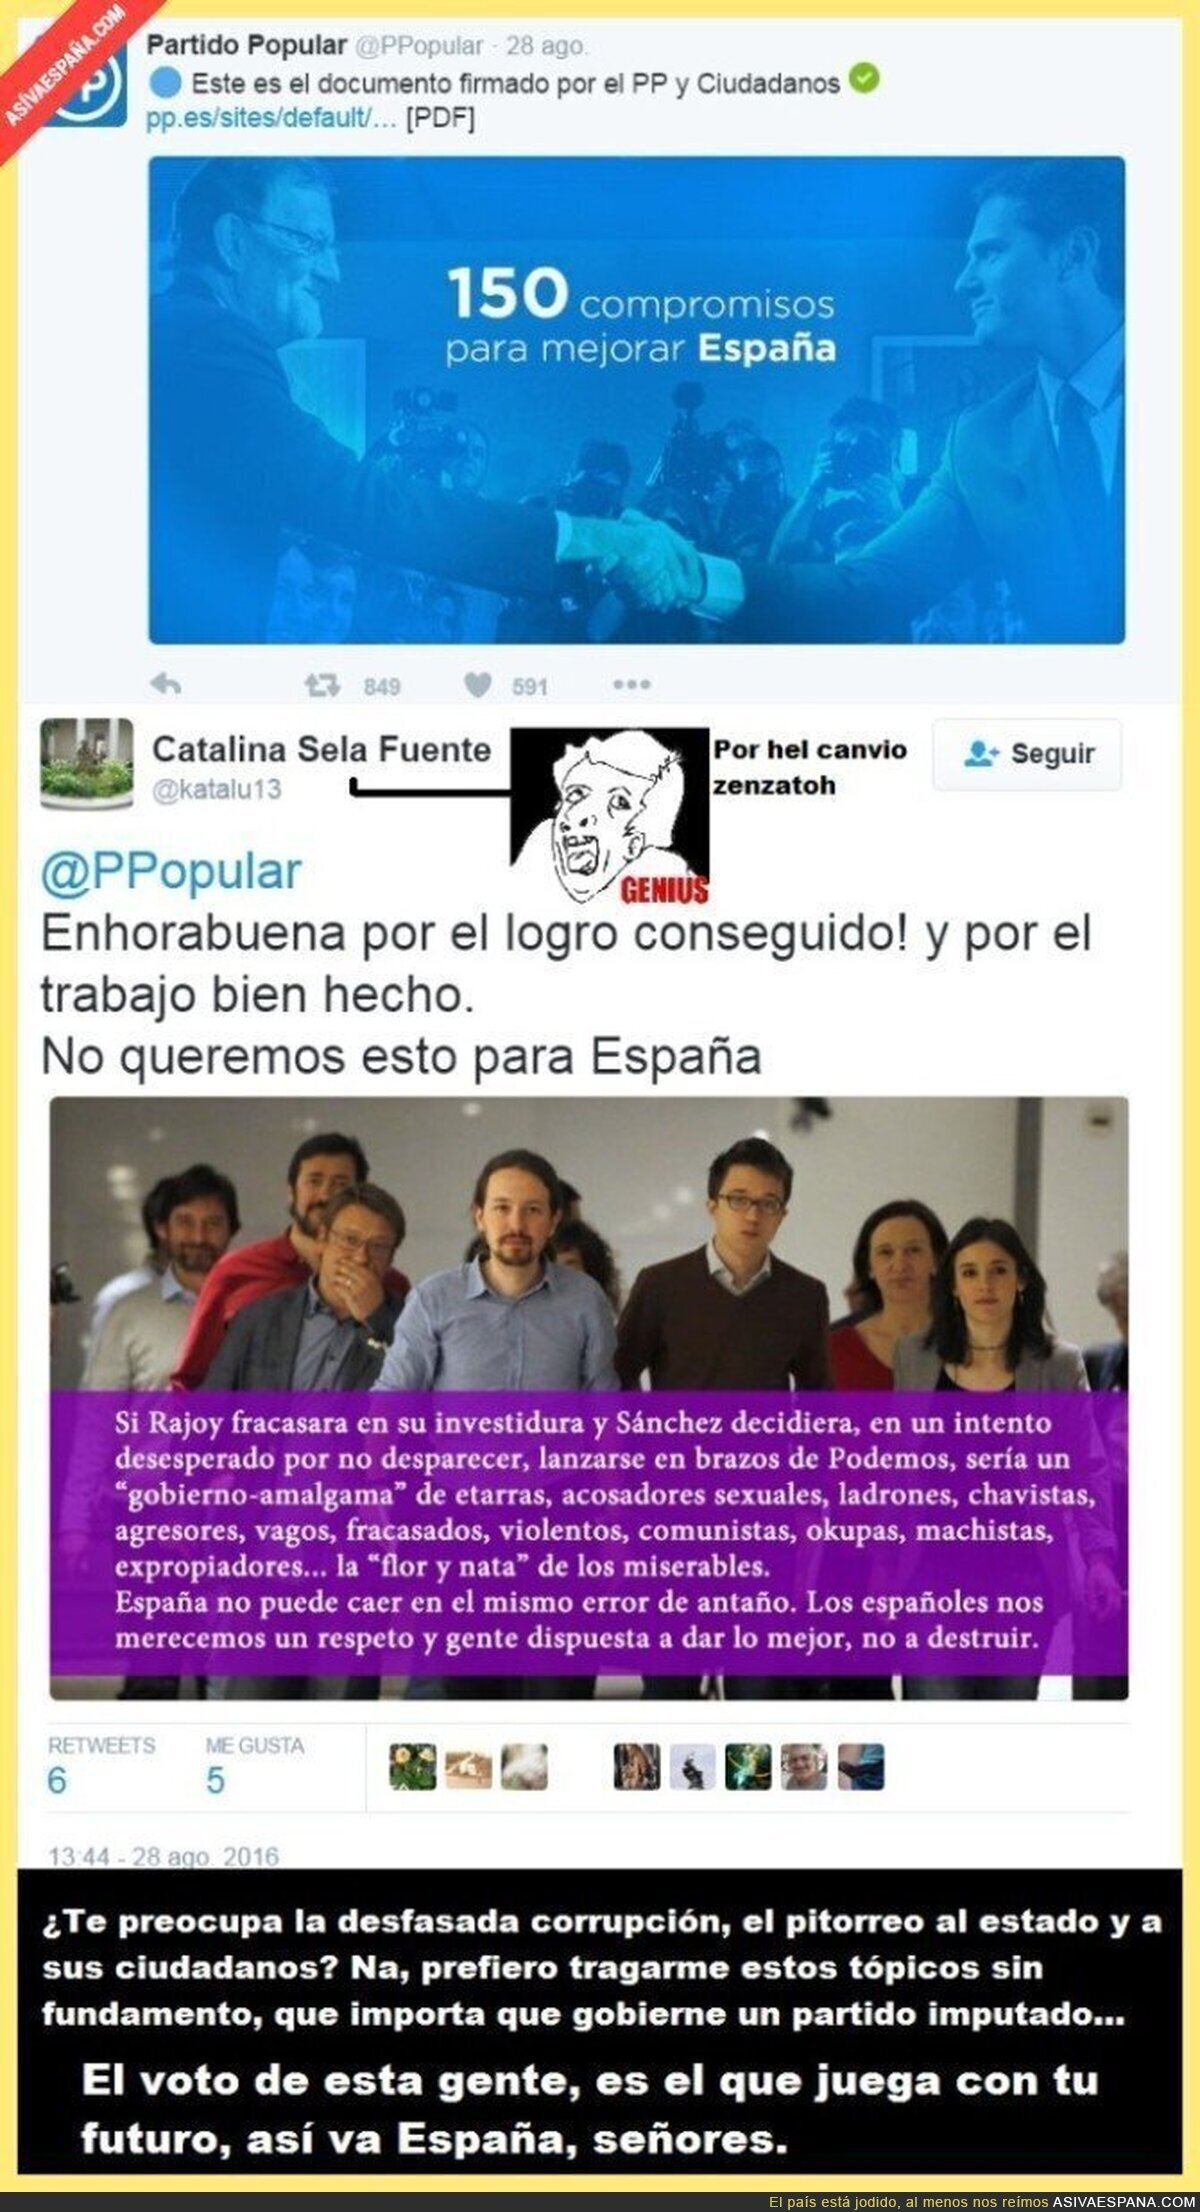 Menos mal que gobierna el honrado PP, casi entran esos corruptos ladrones de Podemos